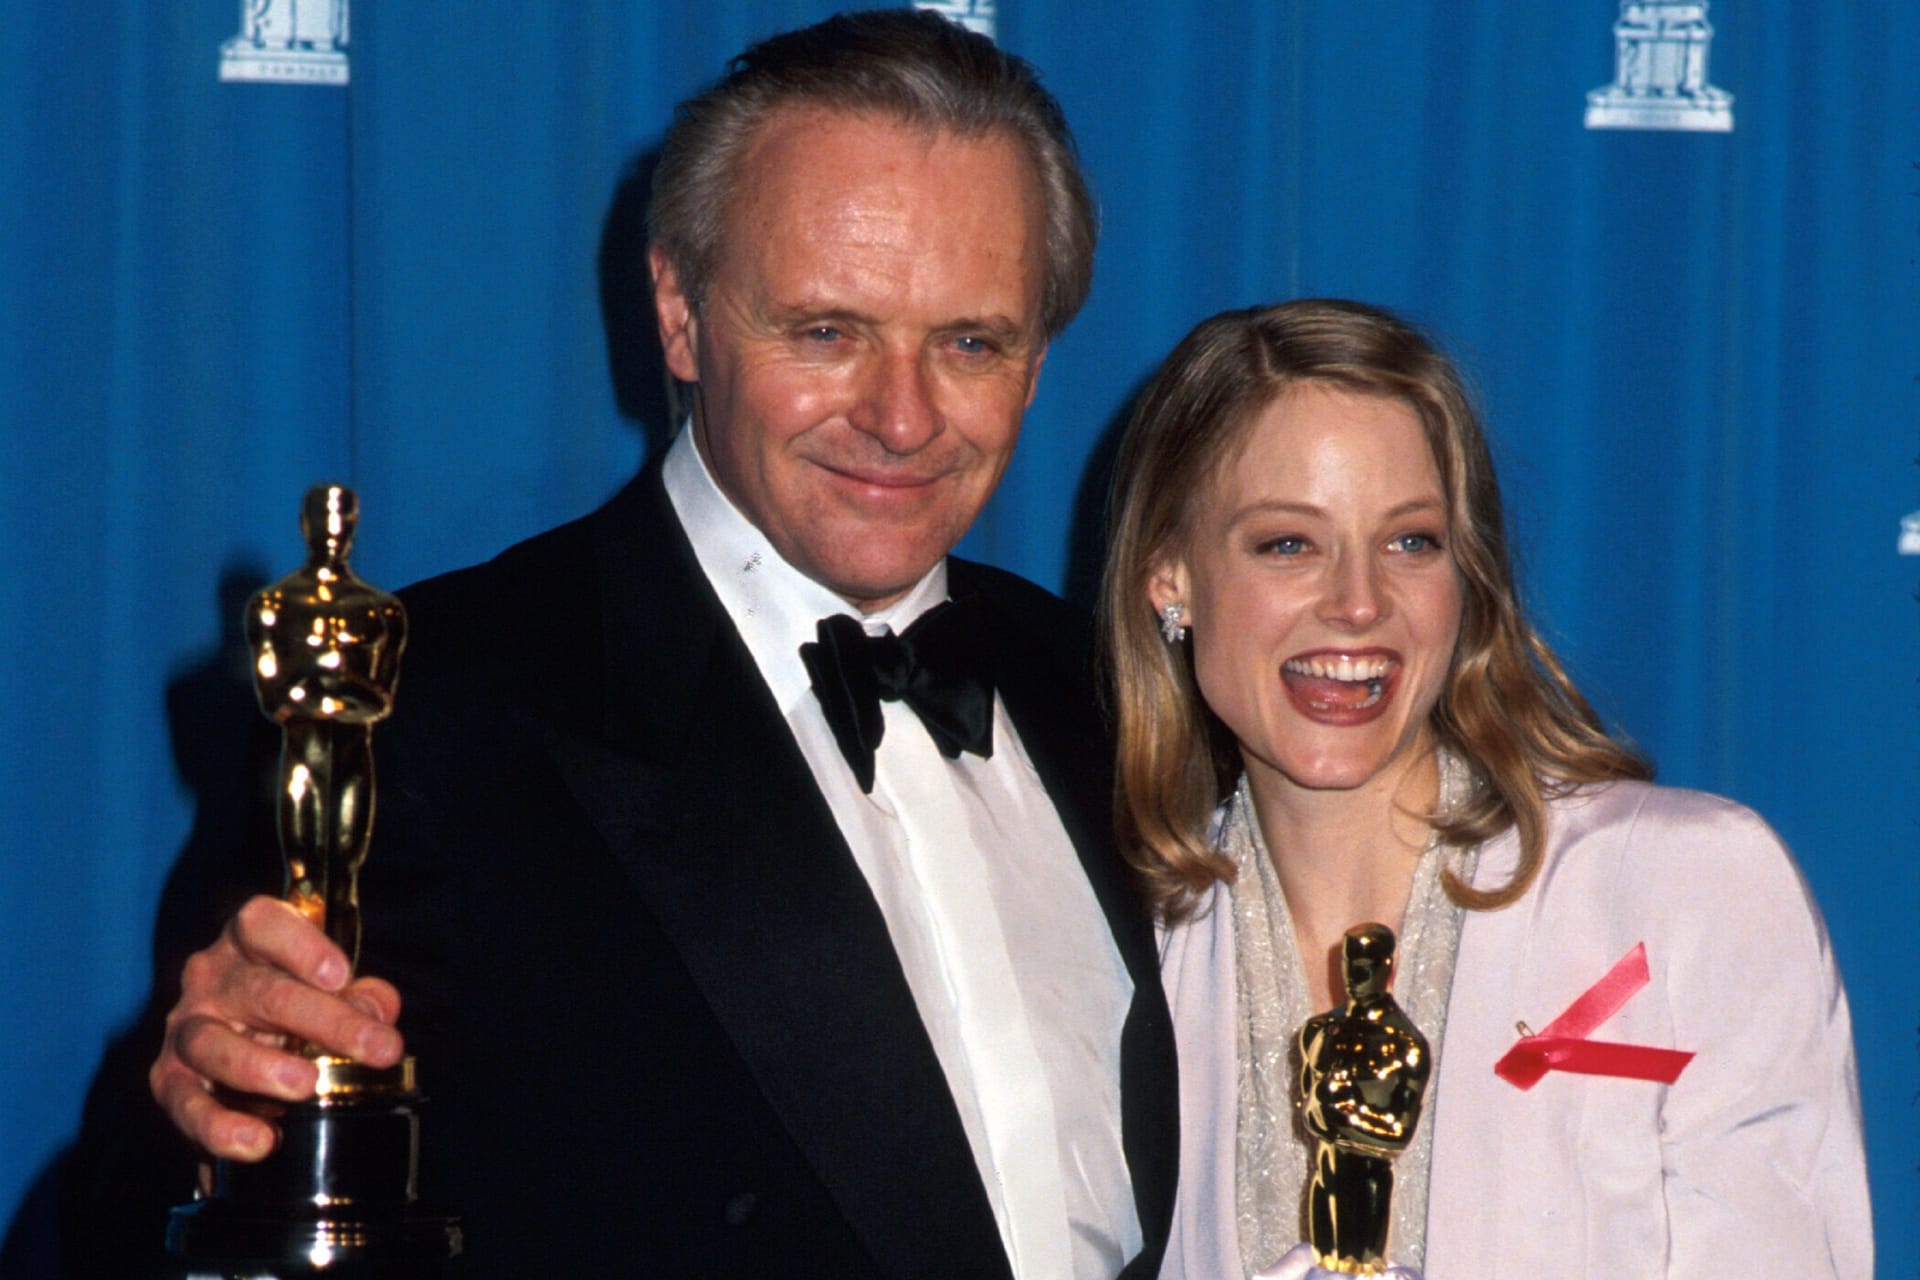 Anthony Hopkins and Jodie Foster: Die "Big Five", also Regie, Drehbuch, Hauptdarsteller und Film, gewannen bisher nur "Es geschah in einer Nacht" (1934), "Einer flog über das Kuckucksnest" (1975) und "Das Schweigen der Lämmer" (1991) diese beiden Schauspieler.